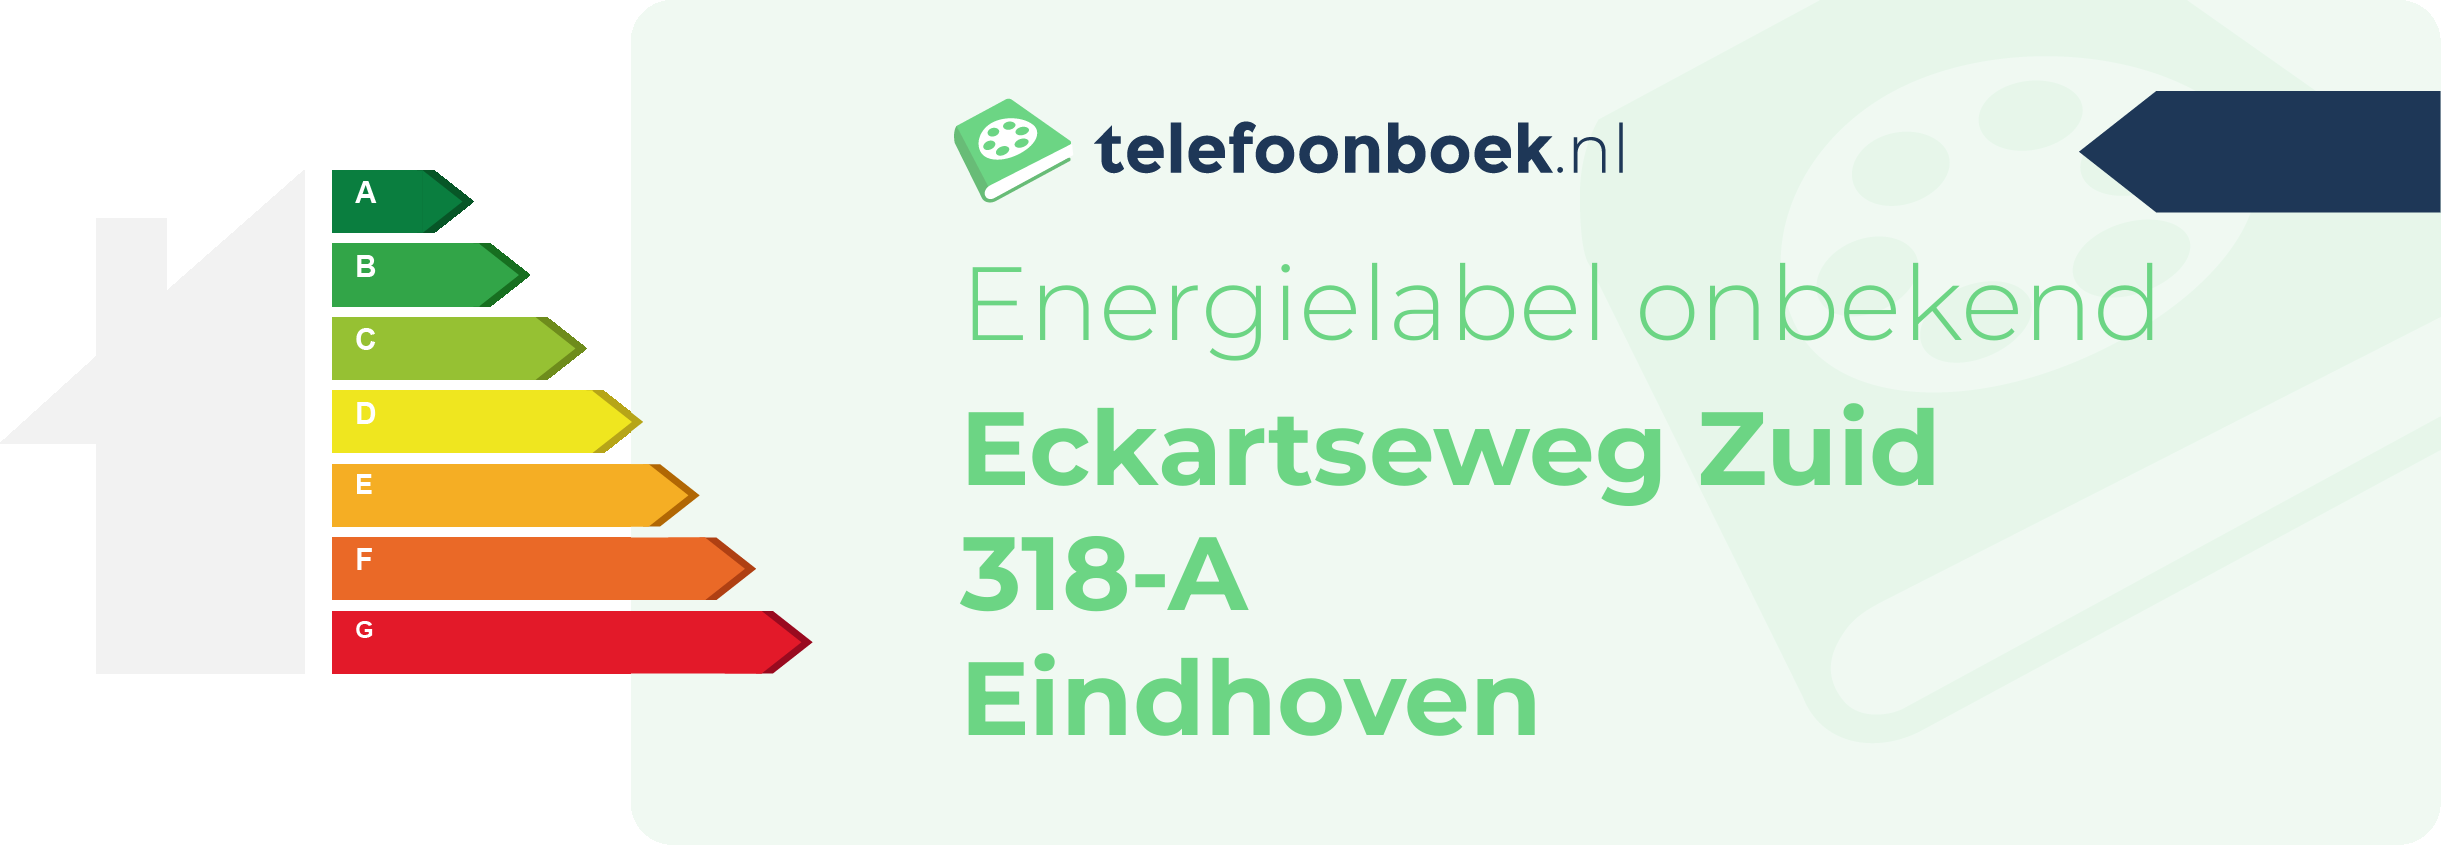 Energielabel Eckartseweg Zuid 318-A Eindhoven